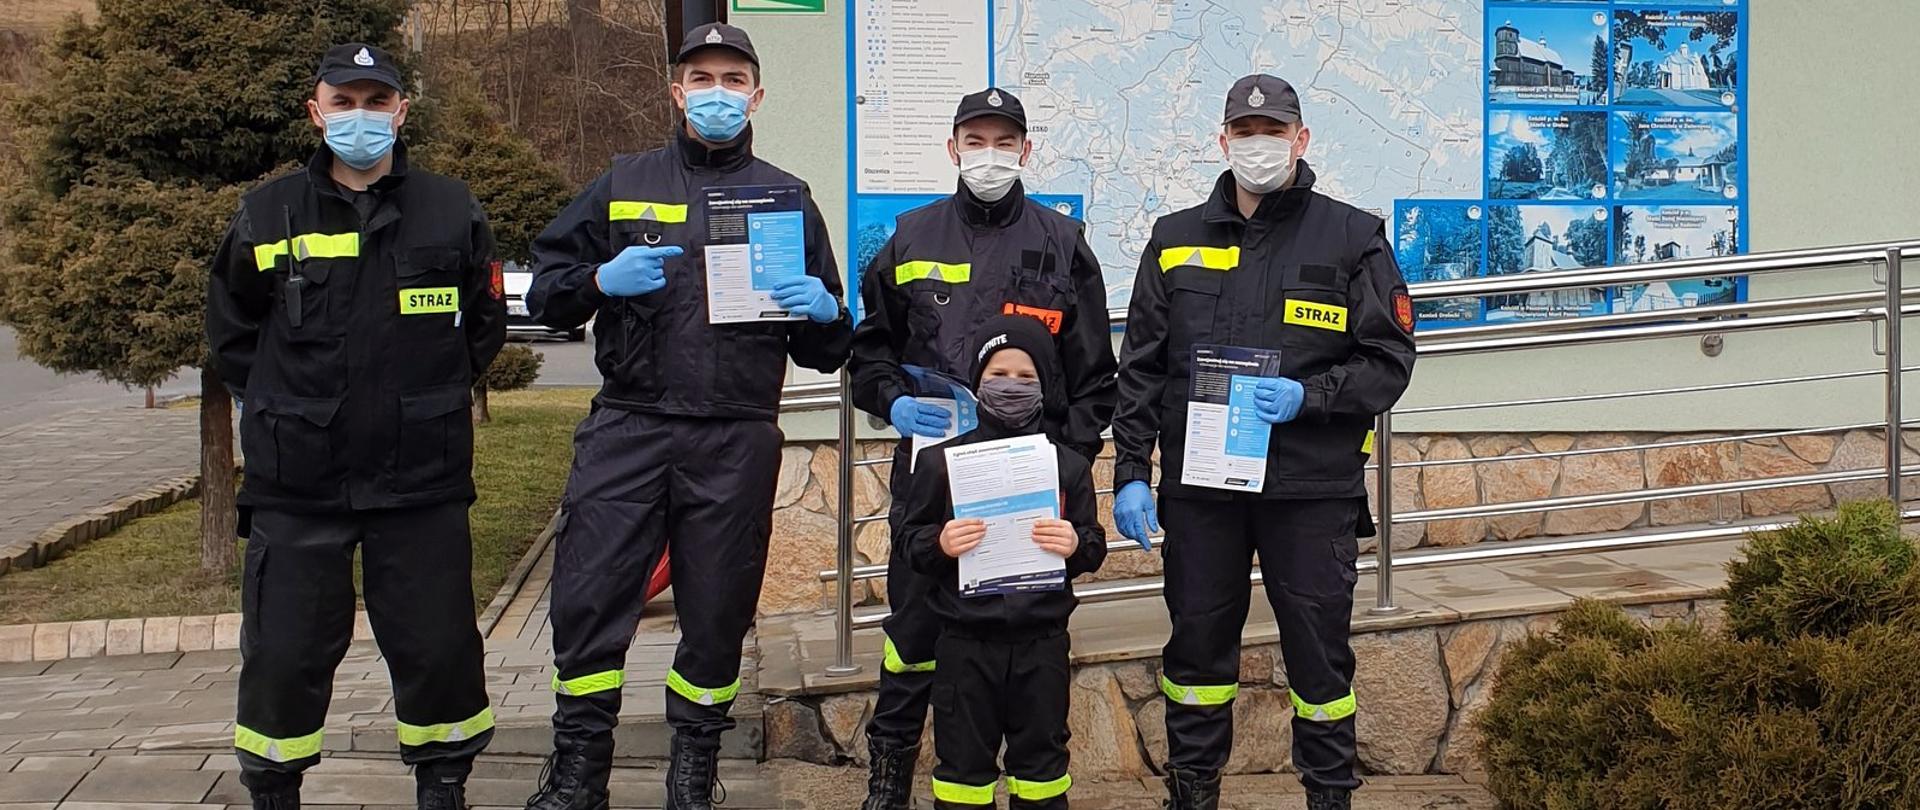 Na zdjęciu w rzędzie stoi czterech strażaków OSP z ulotkami w rękach. Przed nimi stoi mały chłopiec w mundurze OSP, także z ulotką w rękach. Za nimi tablica informacyjna z napisem gmina Olszanica.